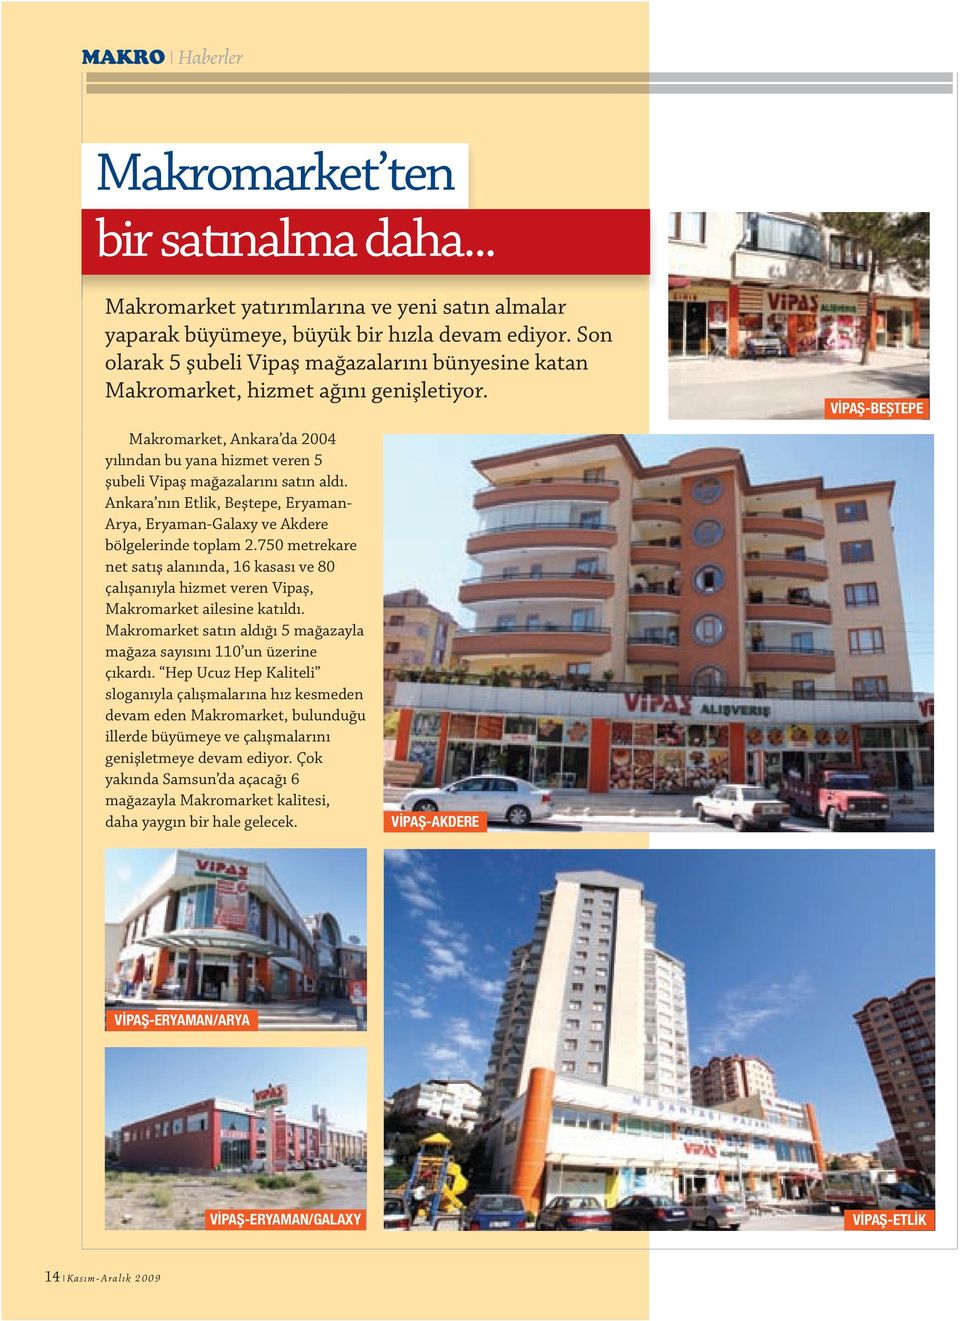 Ankara nın Etlik, Beştepe, Eryaman- Arya, Eryaman-Galaxy ve Akdere bölgelerinde toplam 2.750 metrekare net satış alanında, 16 kasası ve 80 çalışanıyla hizmet veren Vipaş, Makromarket ailesine katıldı.